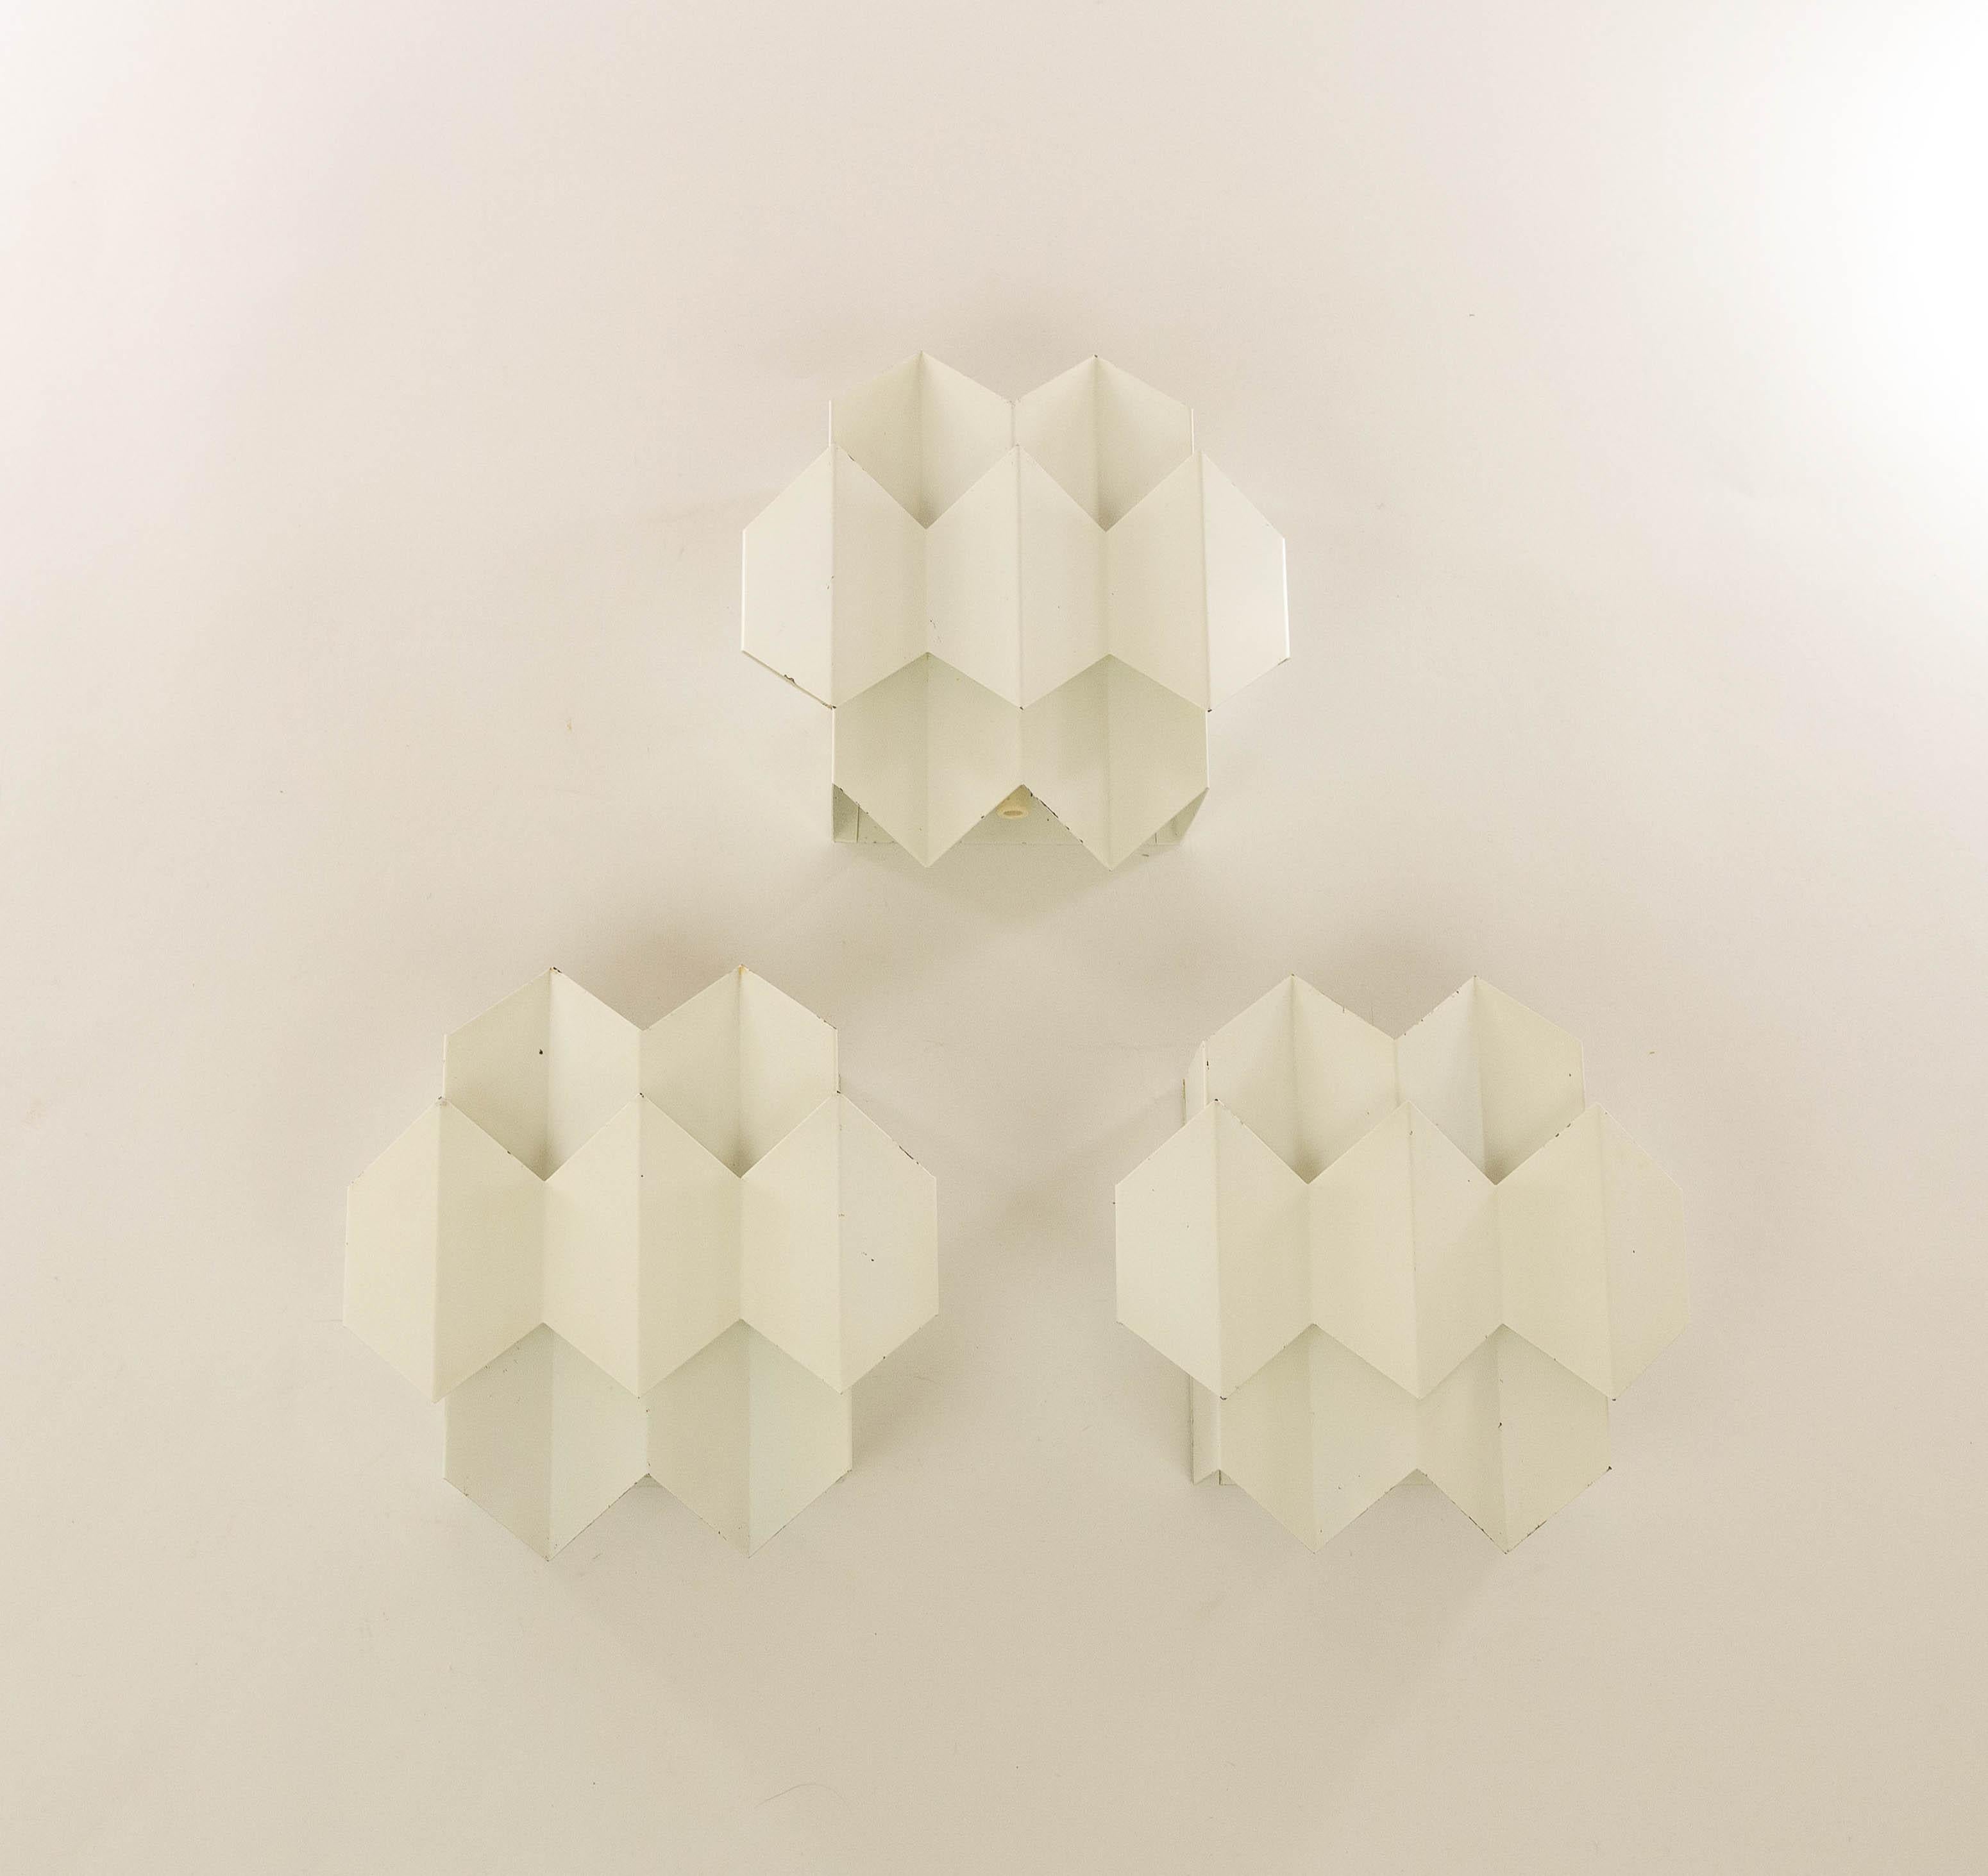 Ensemble de trois appliques Septet blanches géométriques conçues par Bent Karlby et fabriquées par Lyfa, Danemark.

Deux couches de tôle pliée forment ludiquement sept hexagones, qui ont donné au modèle son nom : Septet. Les couches pliées sont